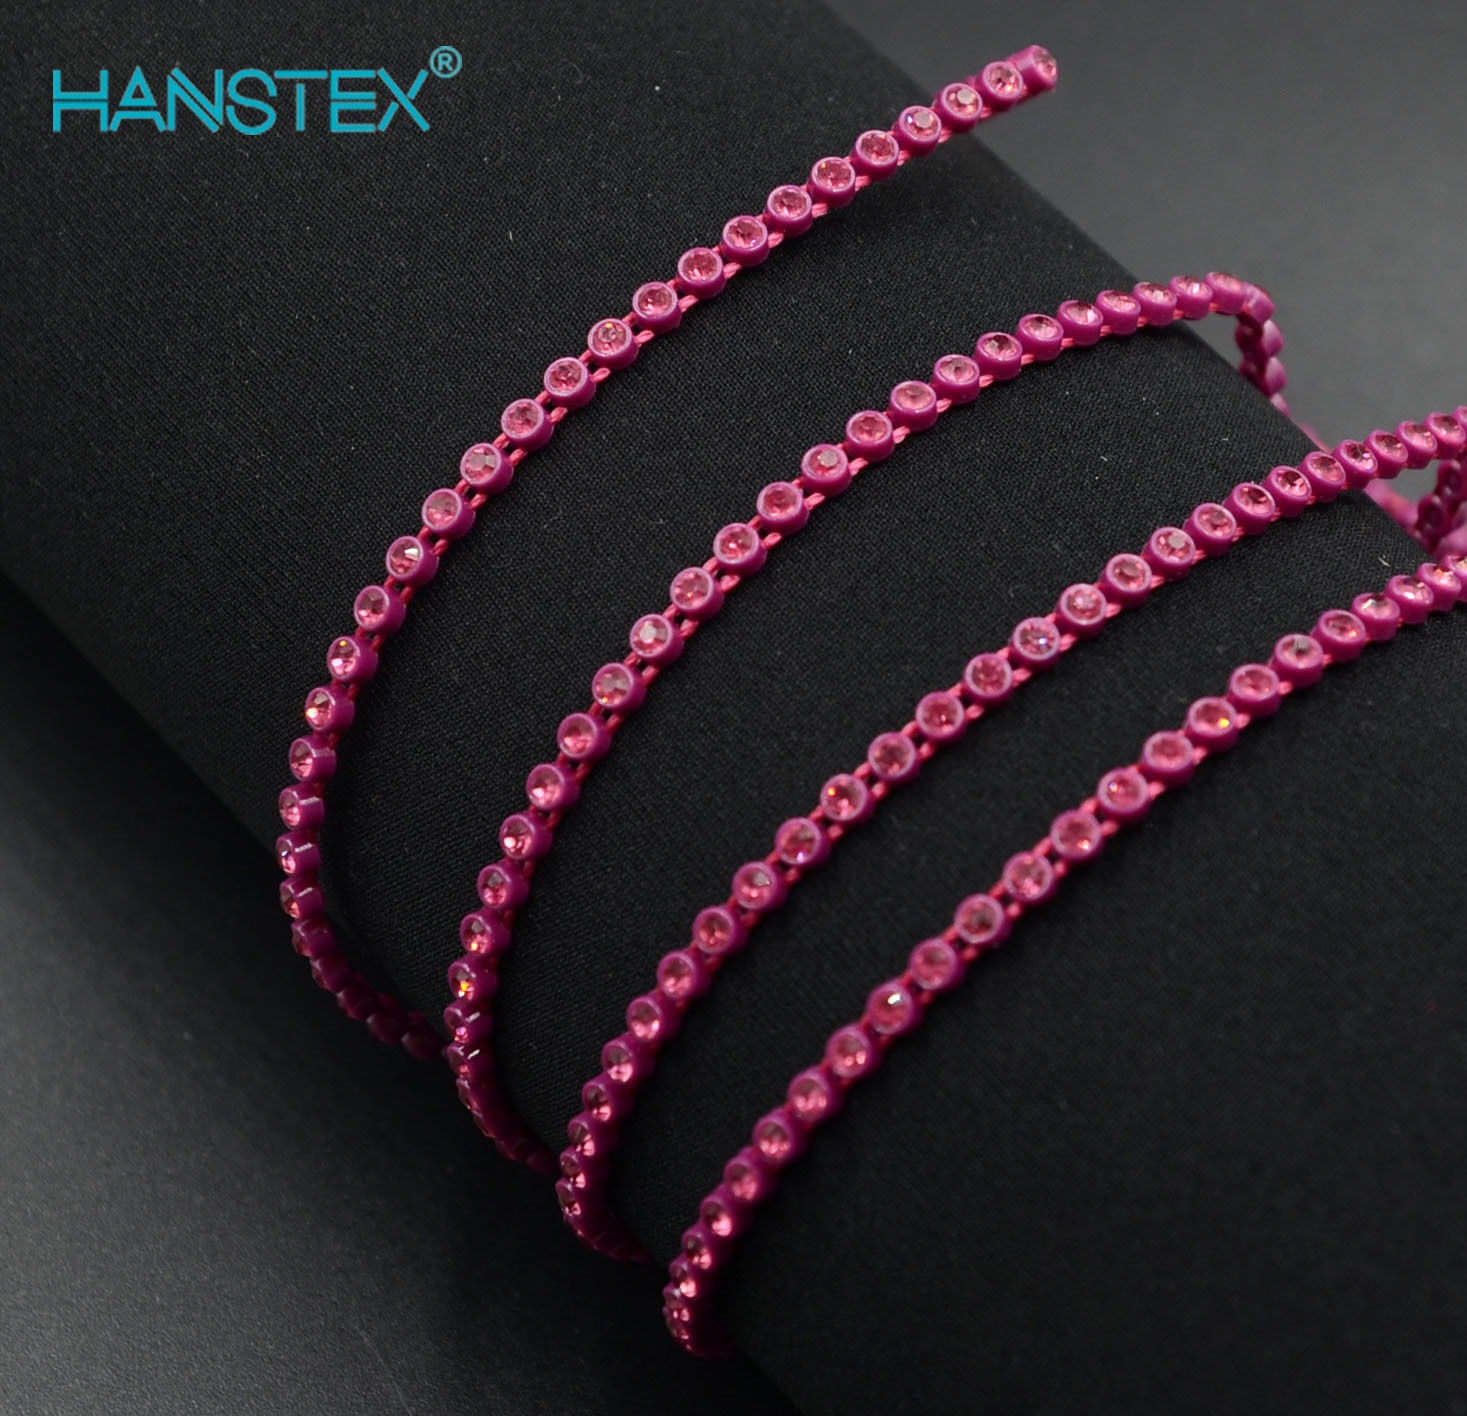 Hanstex Fashion Ab Color cadena de diamantes de imitación de plástico de Color Hanstex Fashion Ab Color cadena de diamantes de imitación de plástico, un grado Ab de 2mm de diamantes de imitación de vi